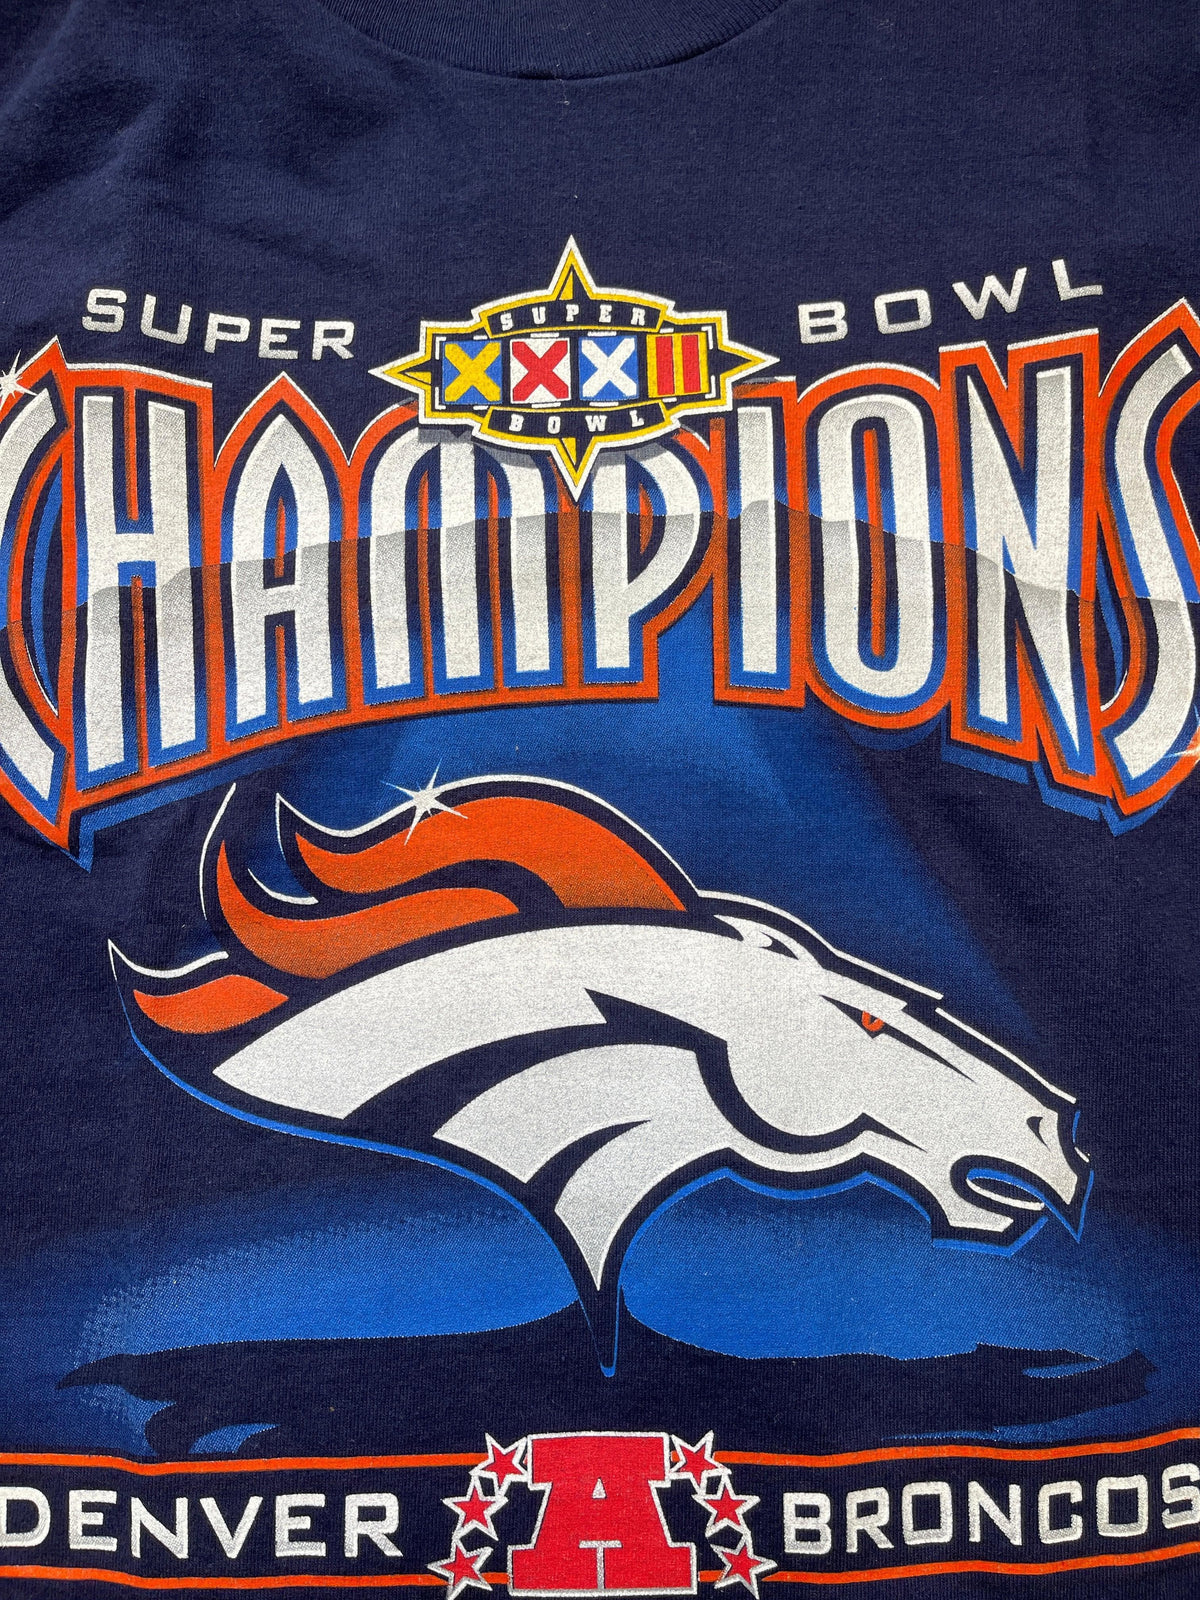 NFL Denver Broncos Super Bowl XXXII Champions T-Shirt Vintage Men's X-Large